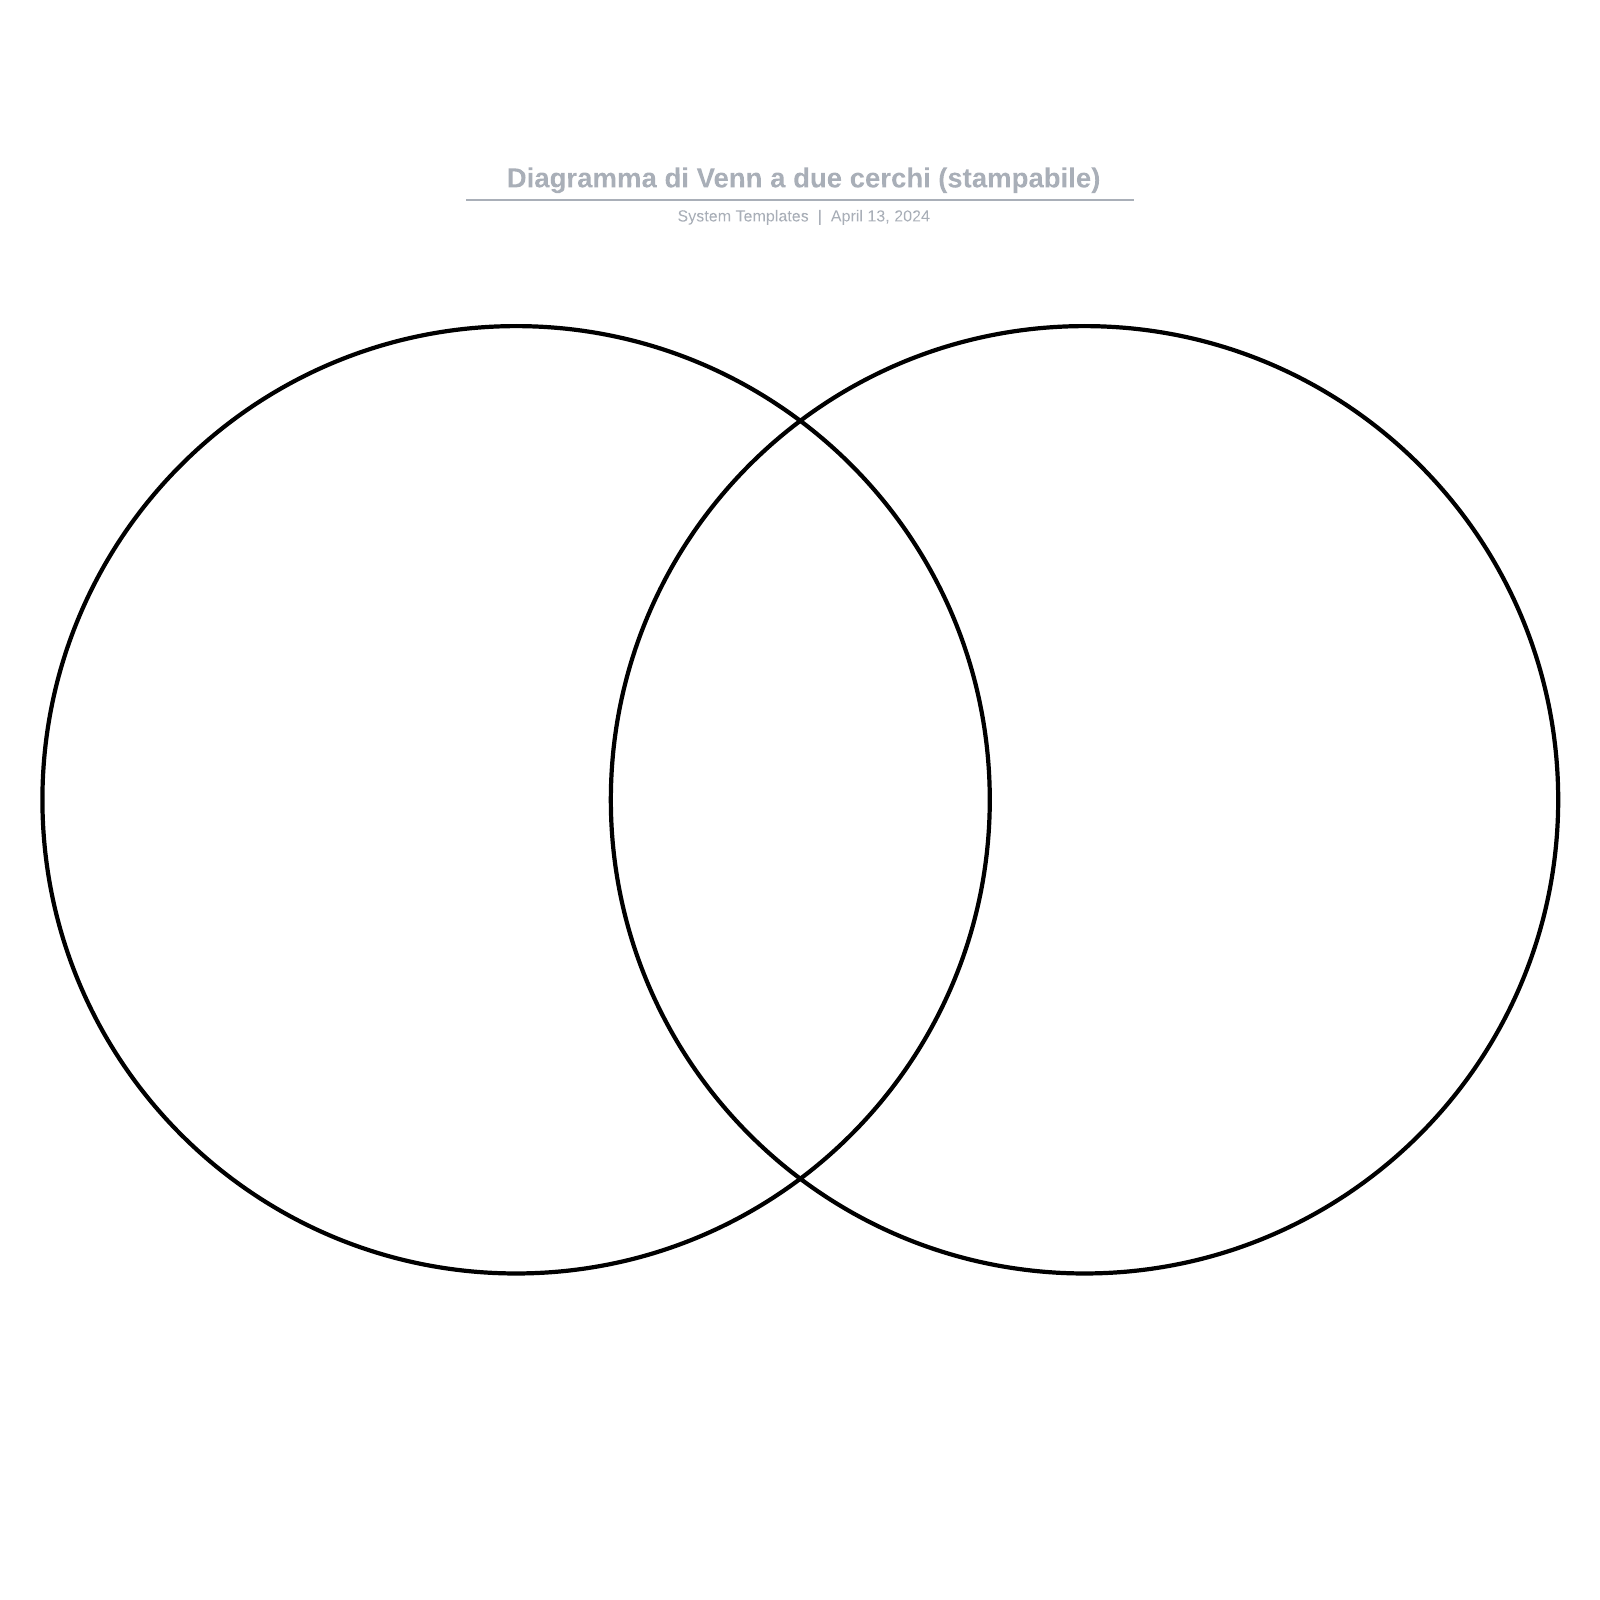 Diagramma di Venn a due cerchi (stampabile) example